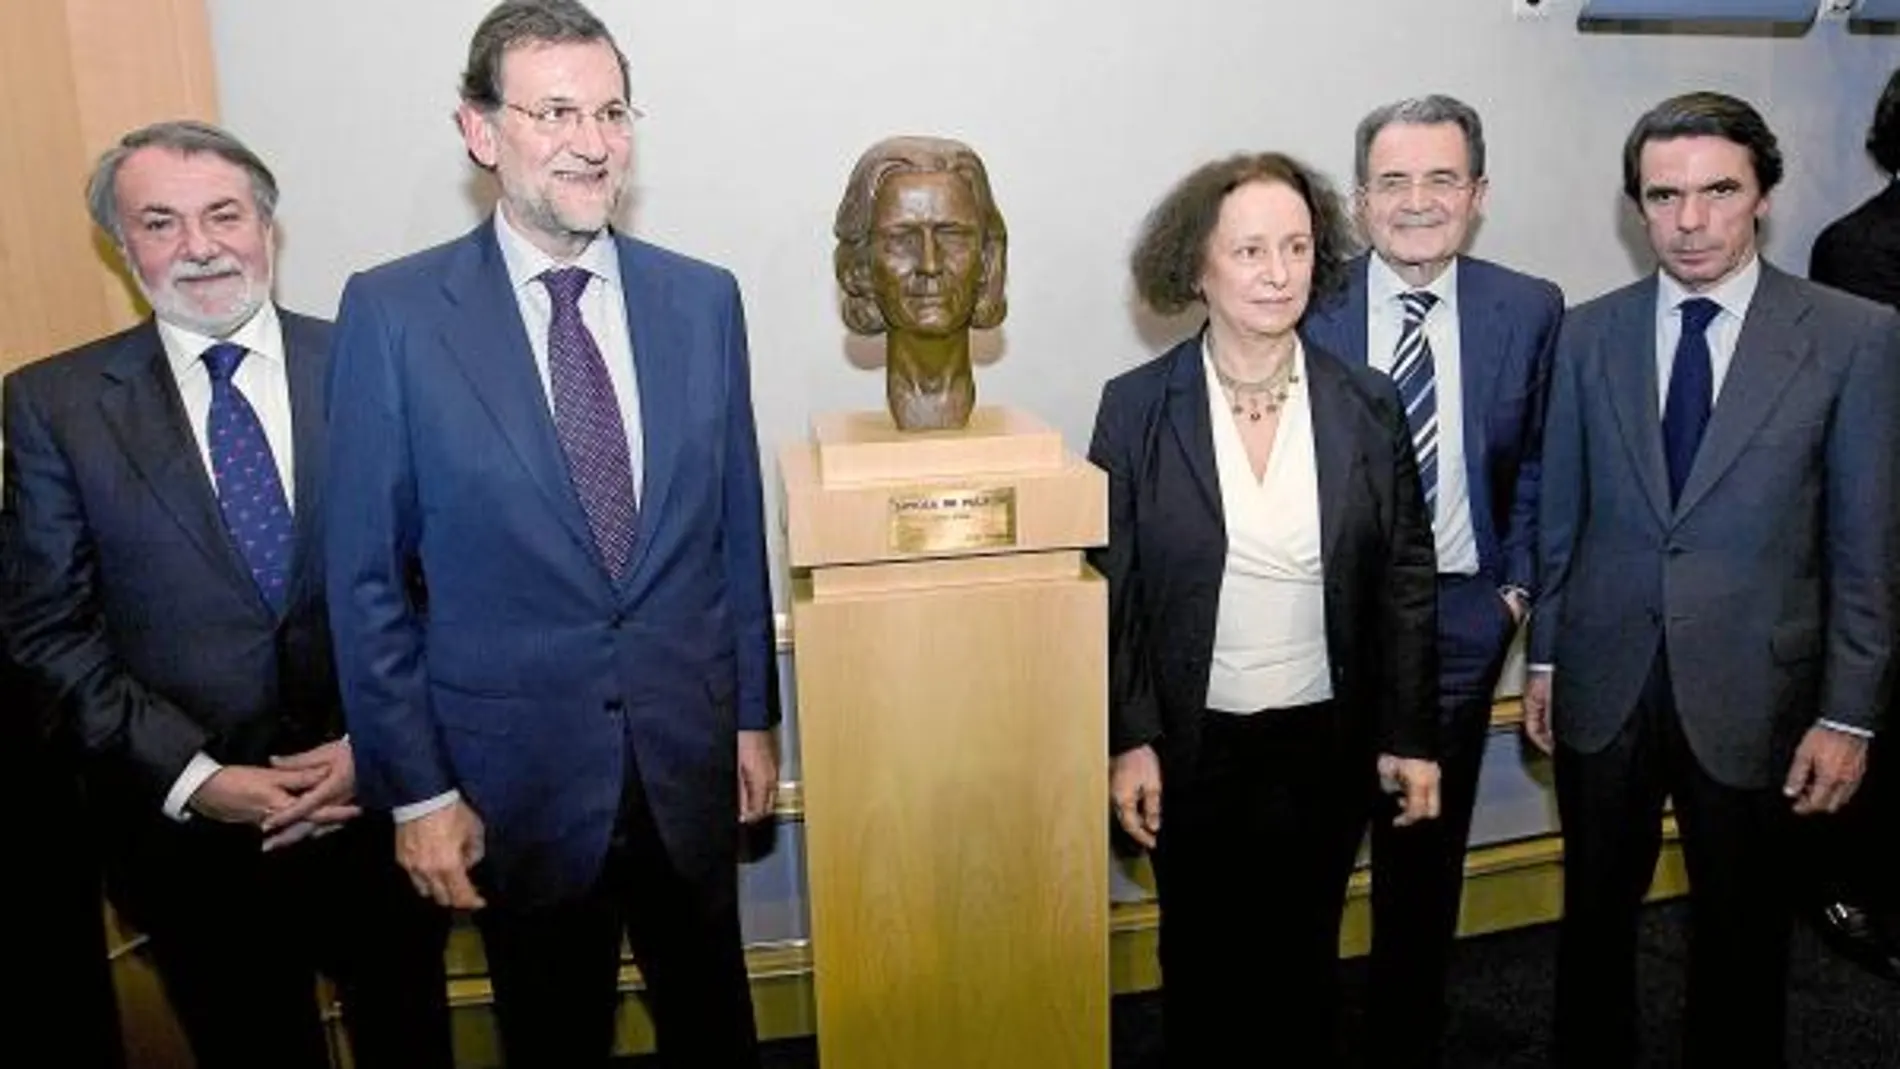 Rajoy y Aznar participaron ayer con otros dirigentes del PP en el homenaje a Loyola de Palacio que tuvo lugar en el Parlamento Europeo